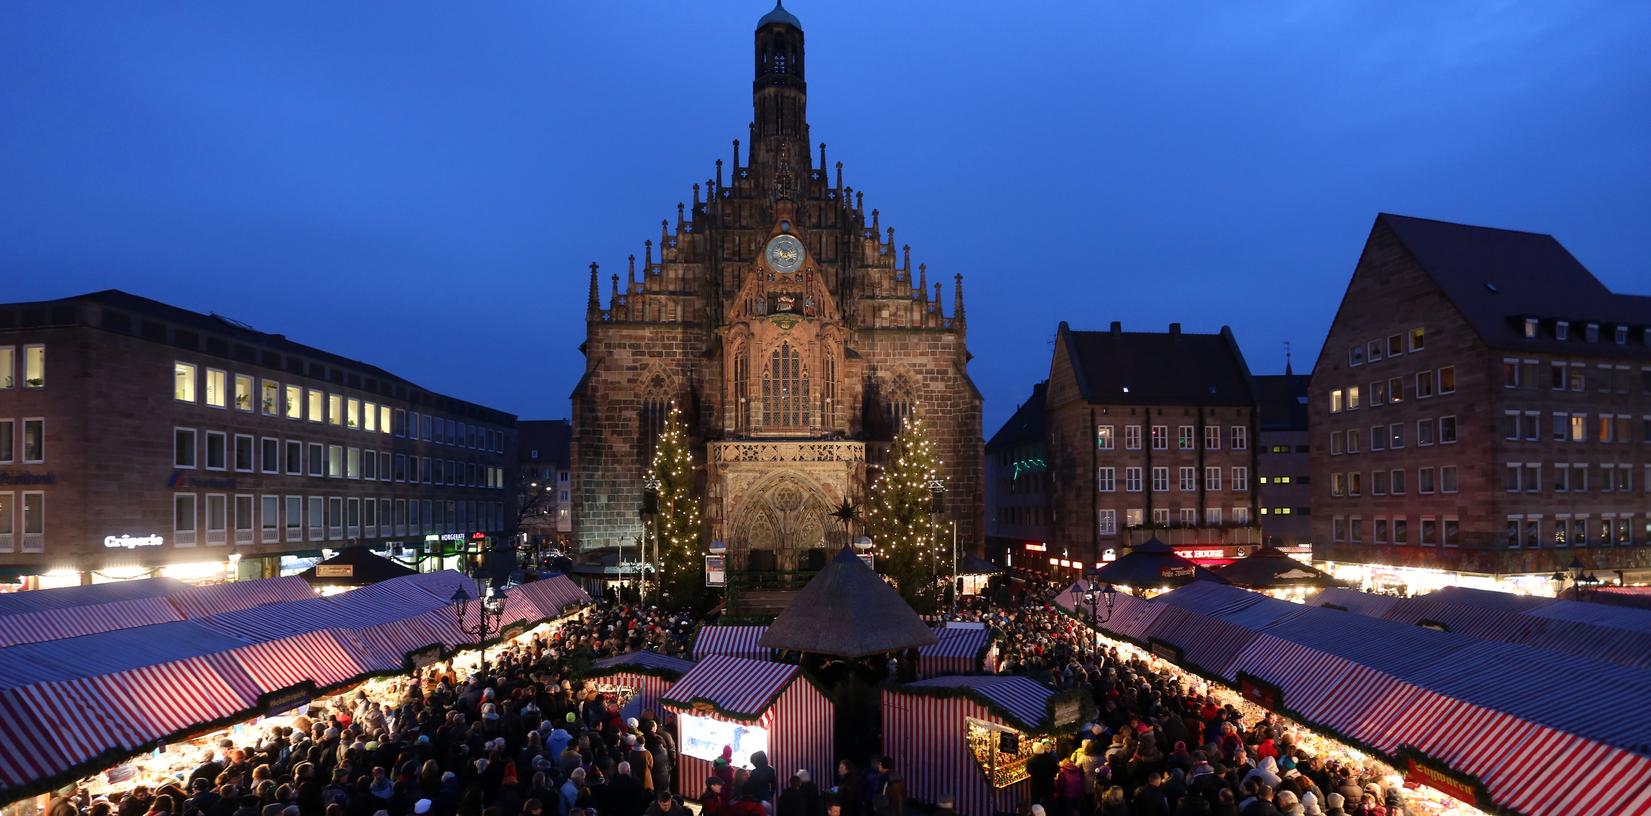 Bei einer aktuellen Umfrage holte sich der Nürnberger Christkindlesmarkt den ersten Platz als beliebtester Weihnachtsmarkt.